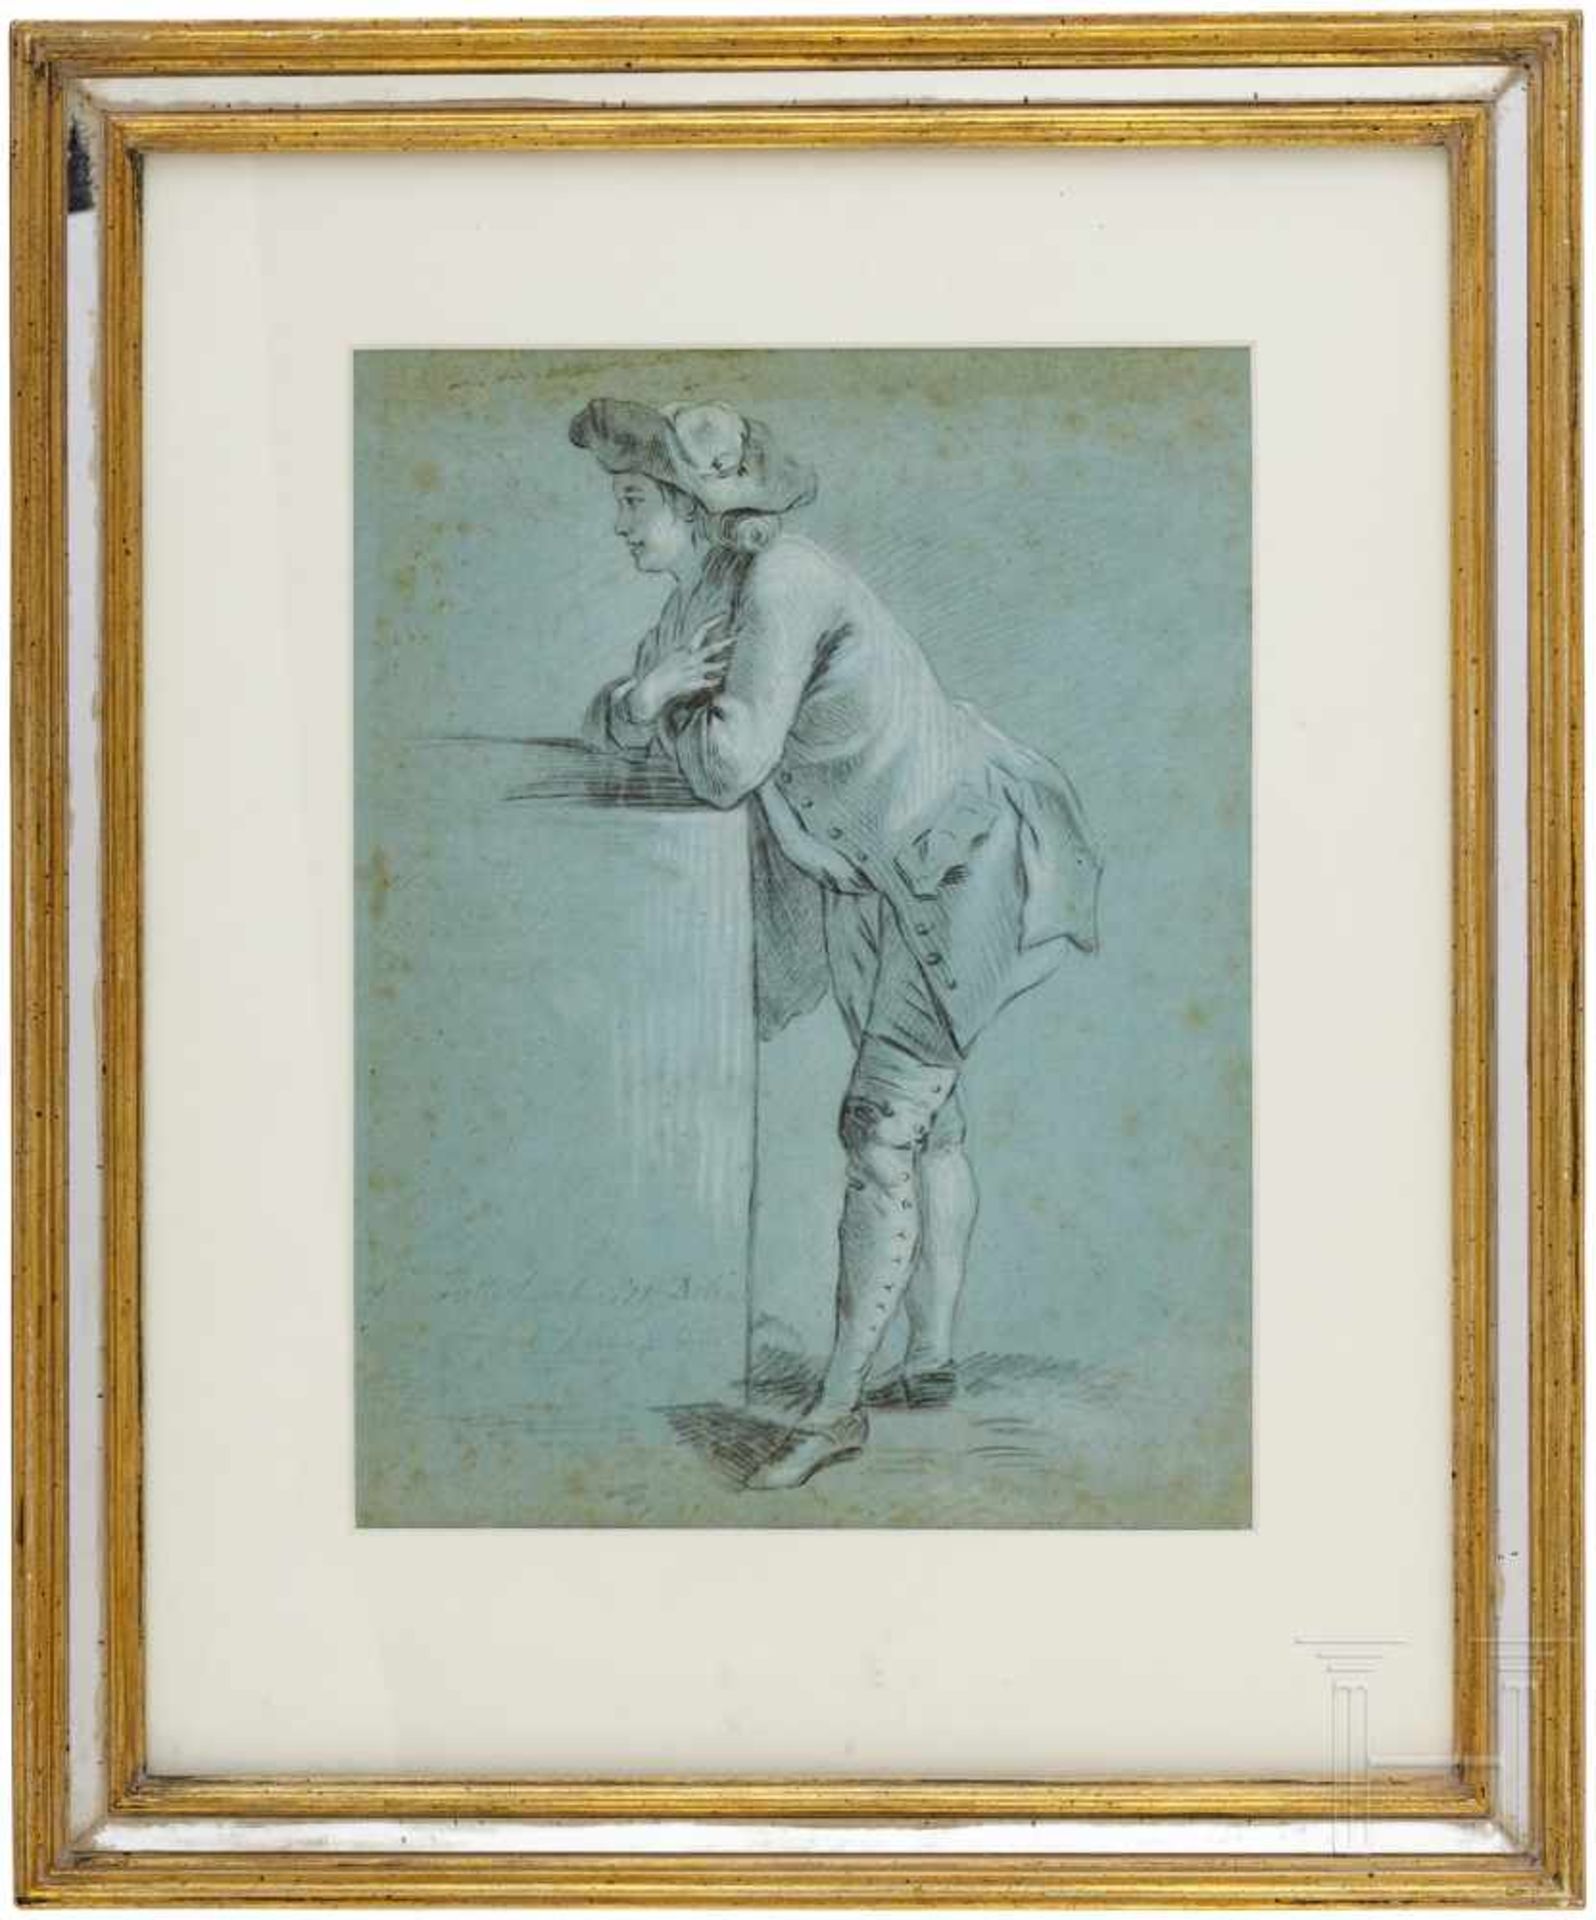 Französische Schule, 18. Jhdt.Altmeisterliche Zeichnung eines jungen Herren, sich auf eine Säule